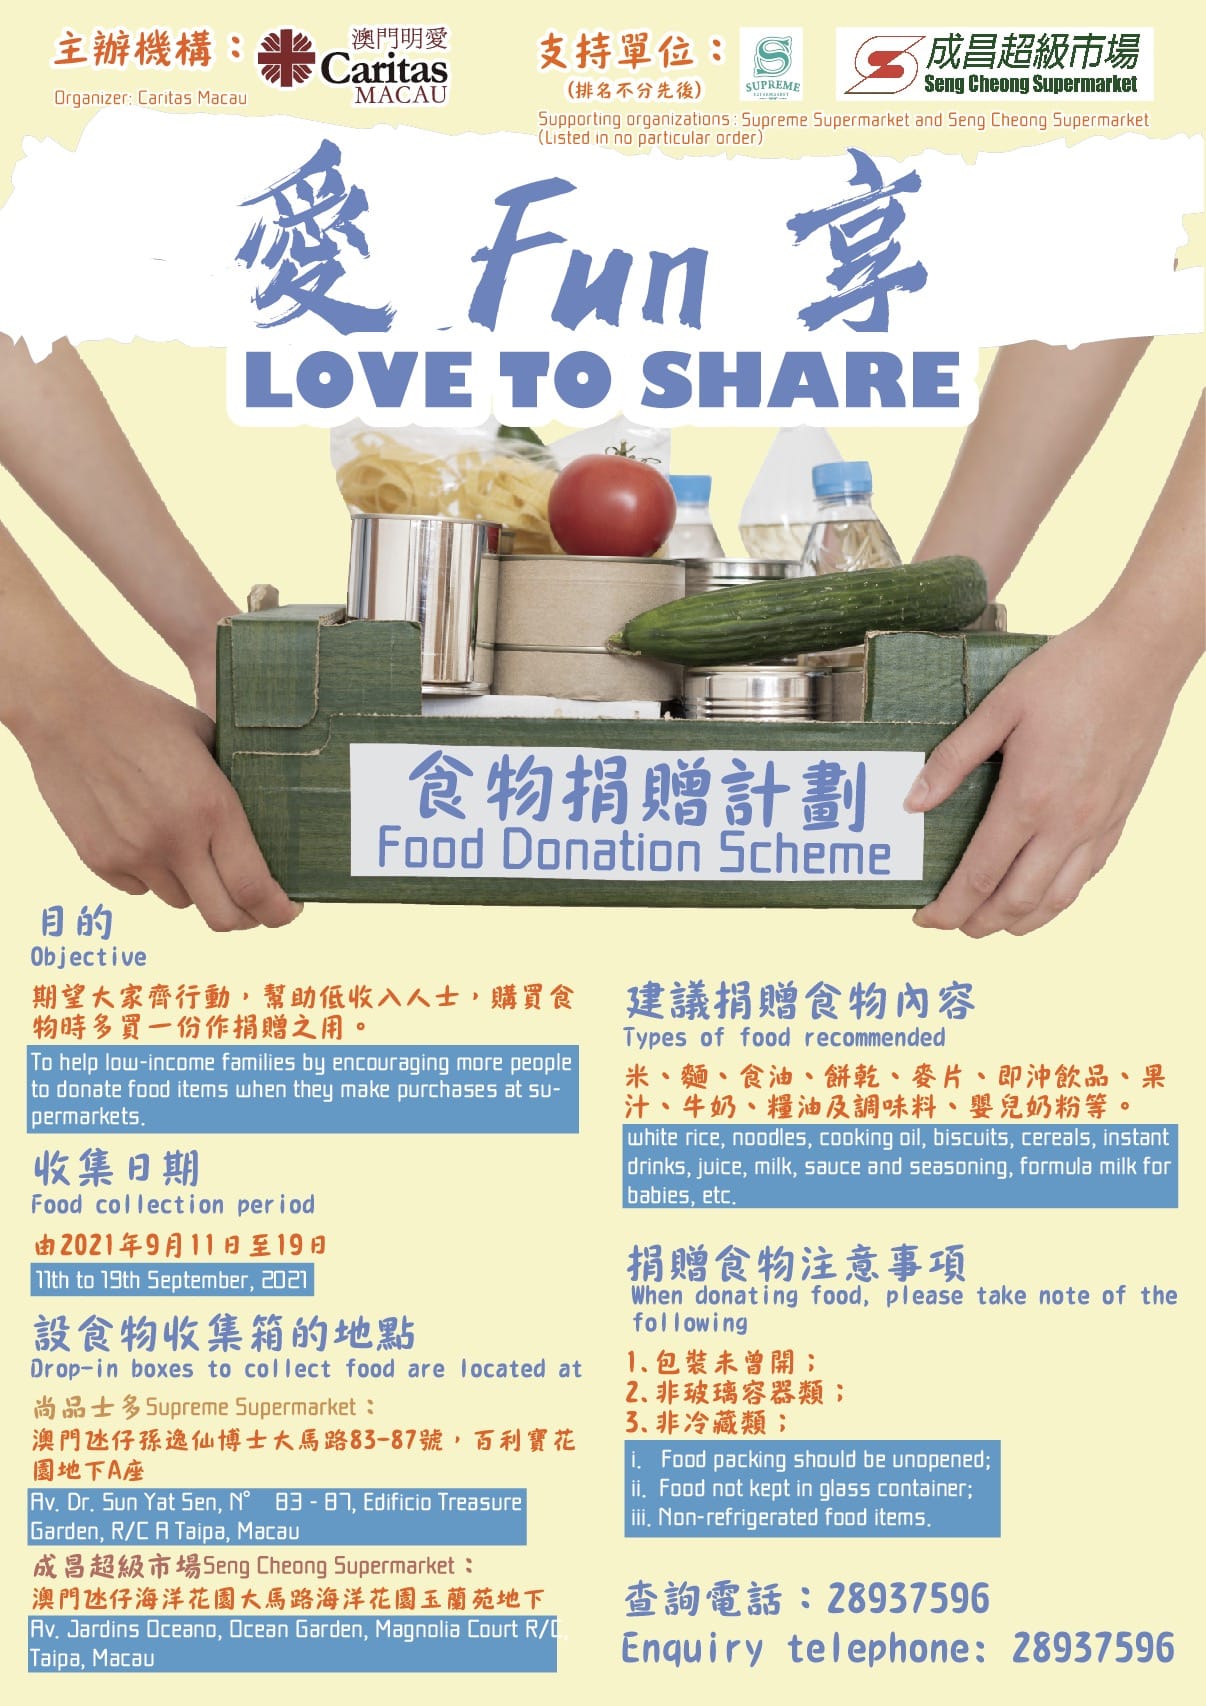 Food donation scheme poster.JPG